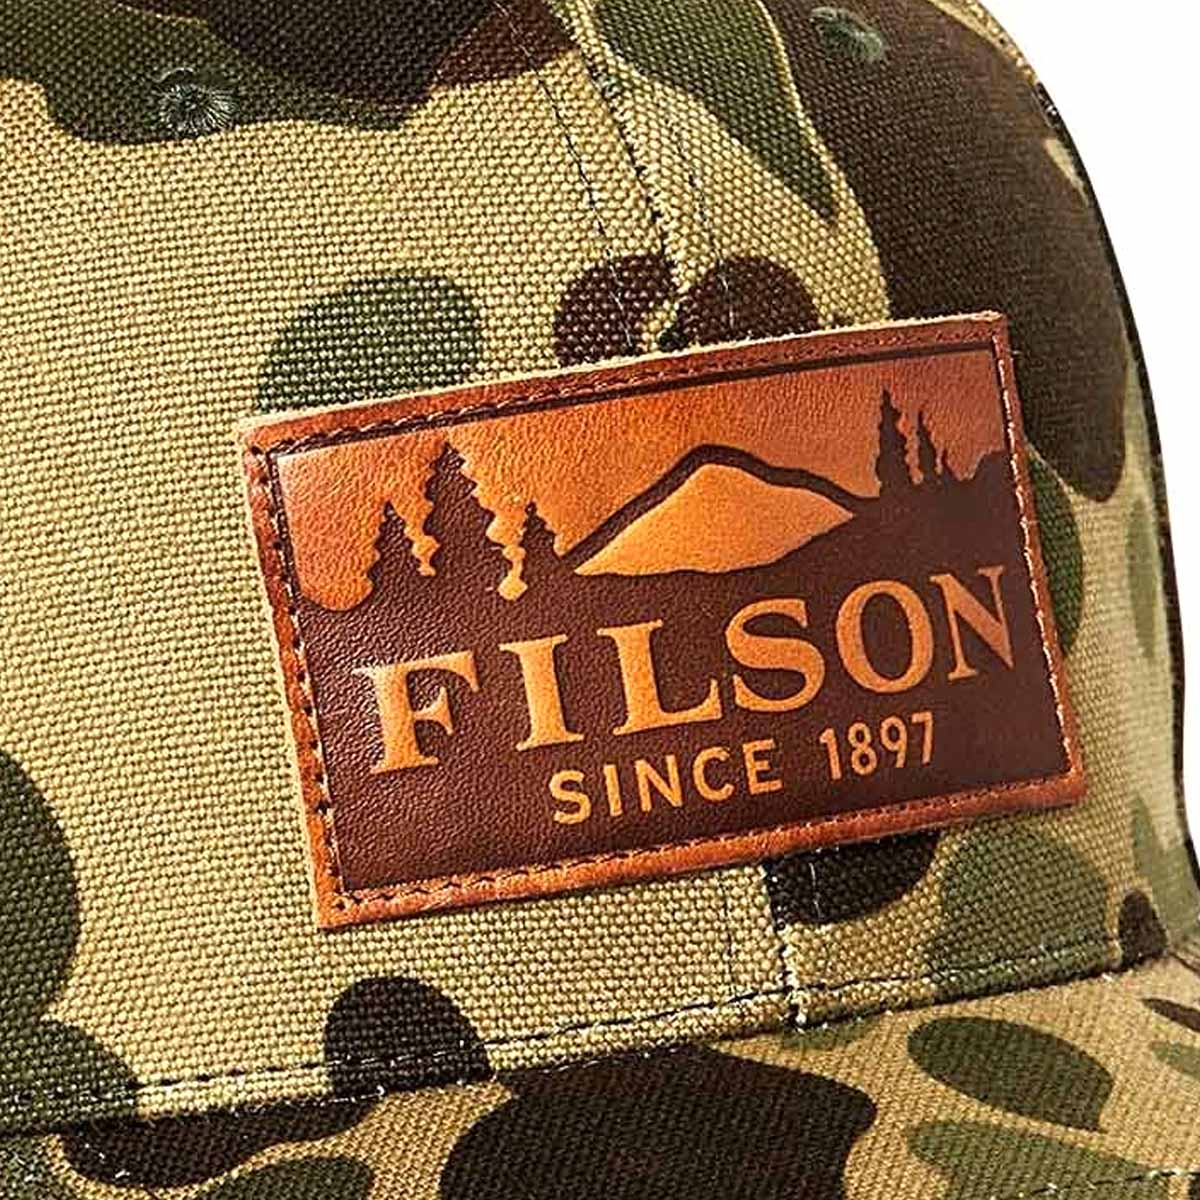 Filson Logger Cap Light Shrub Camo/Scenic, een zes-panel canvas cap voor comfort en jaren trouwe dienst